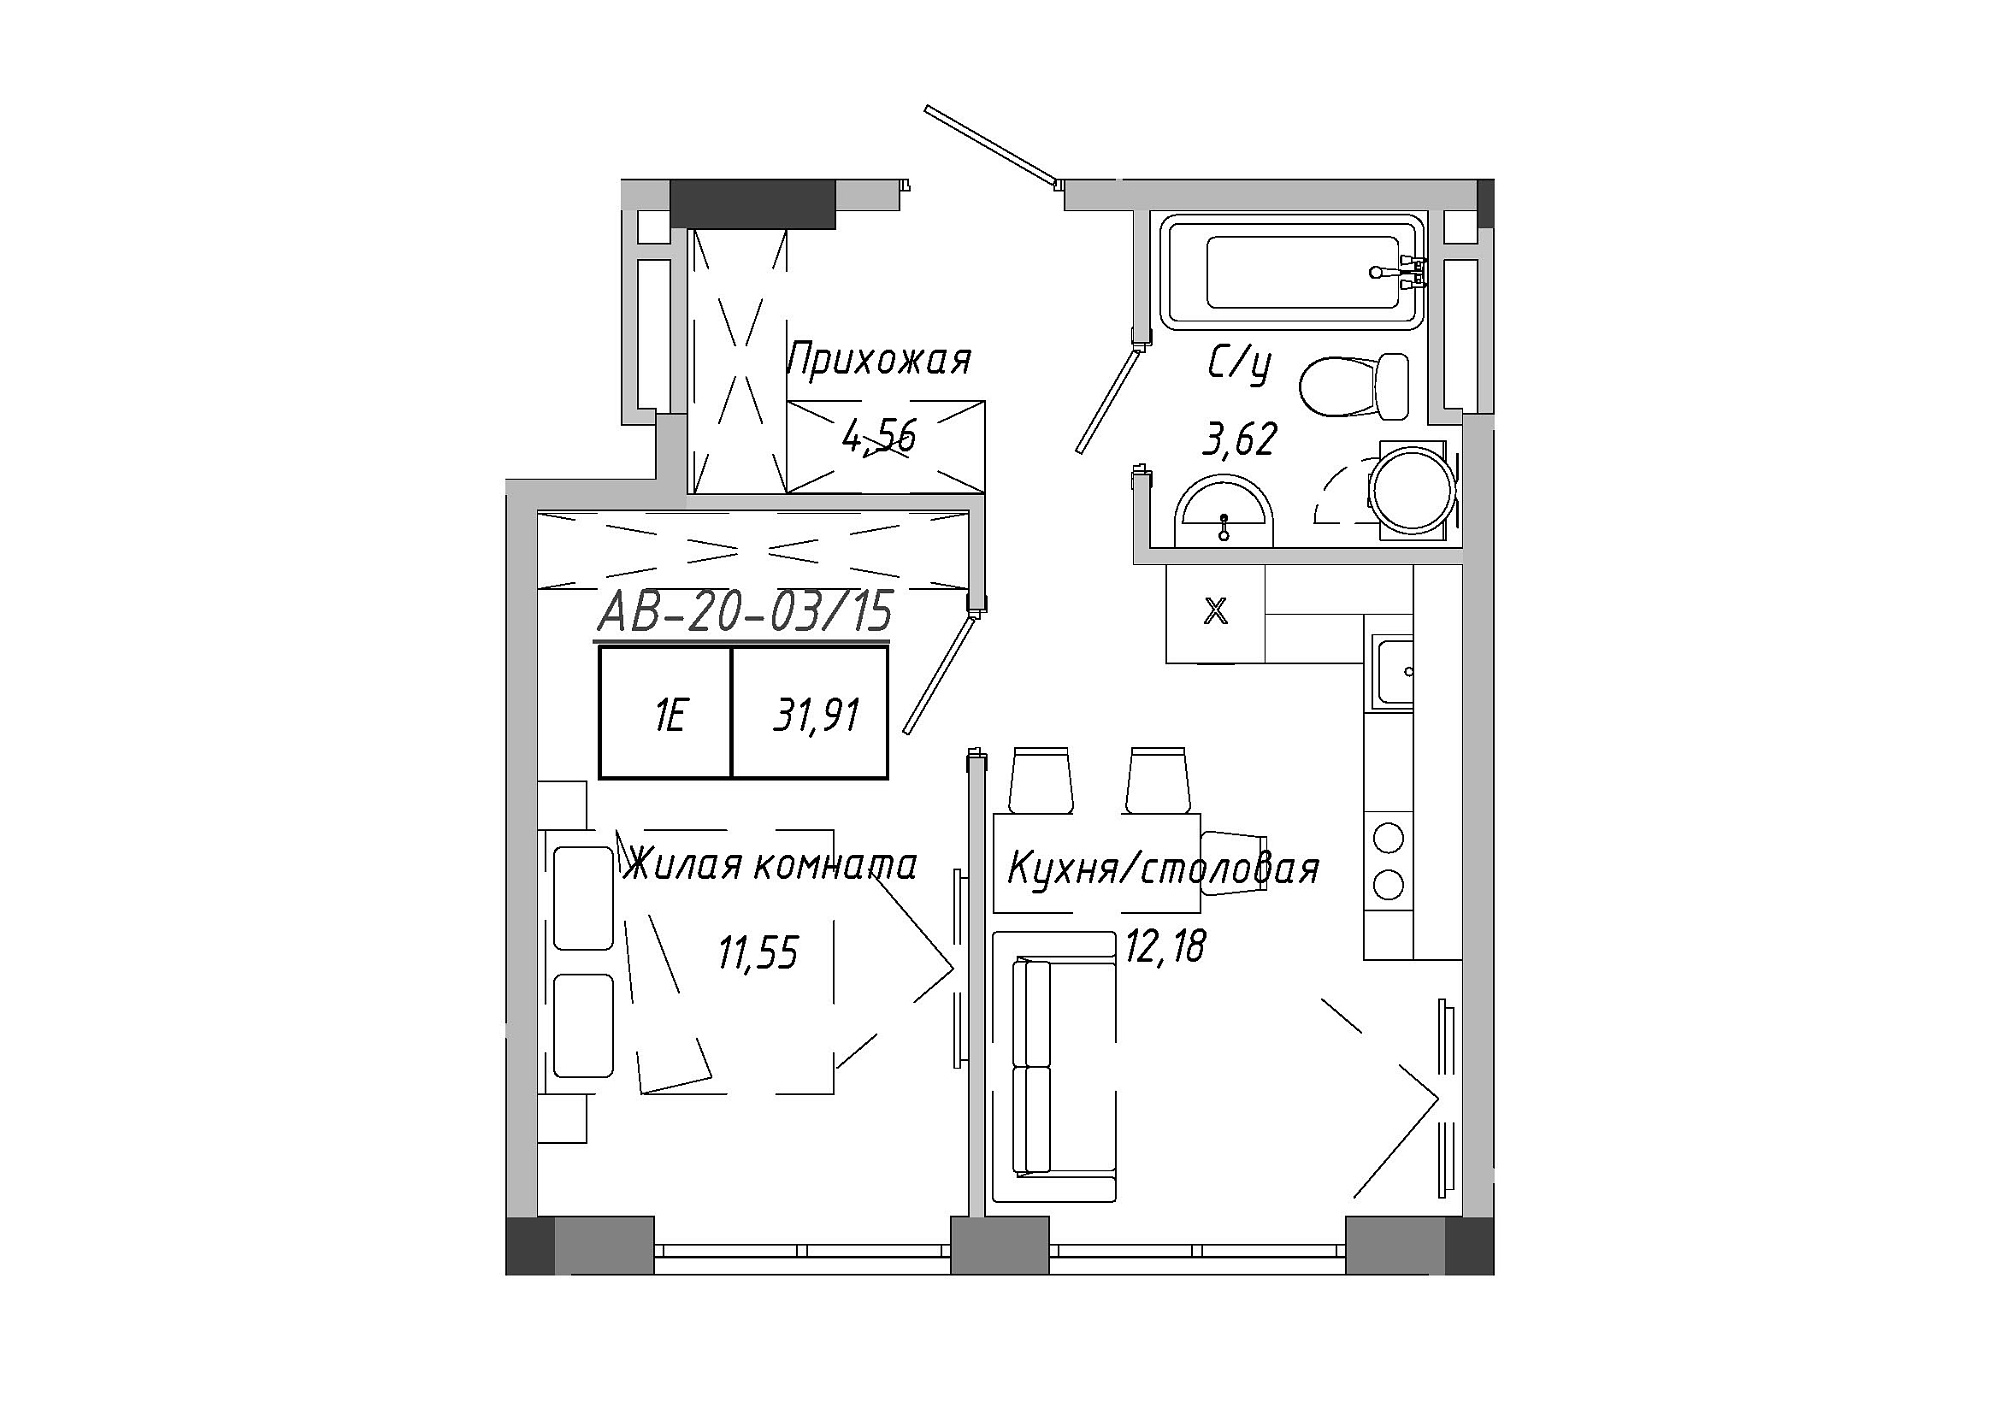 Планировка 1-к квартира площей 31.91м2, AB-20-03/00015.